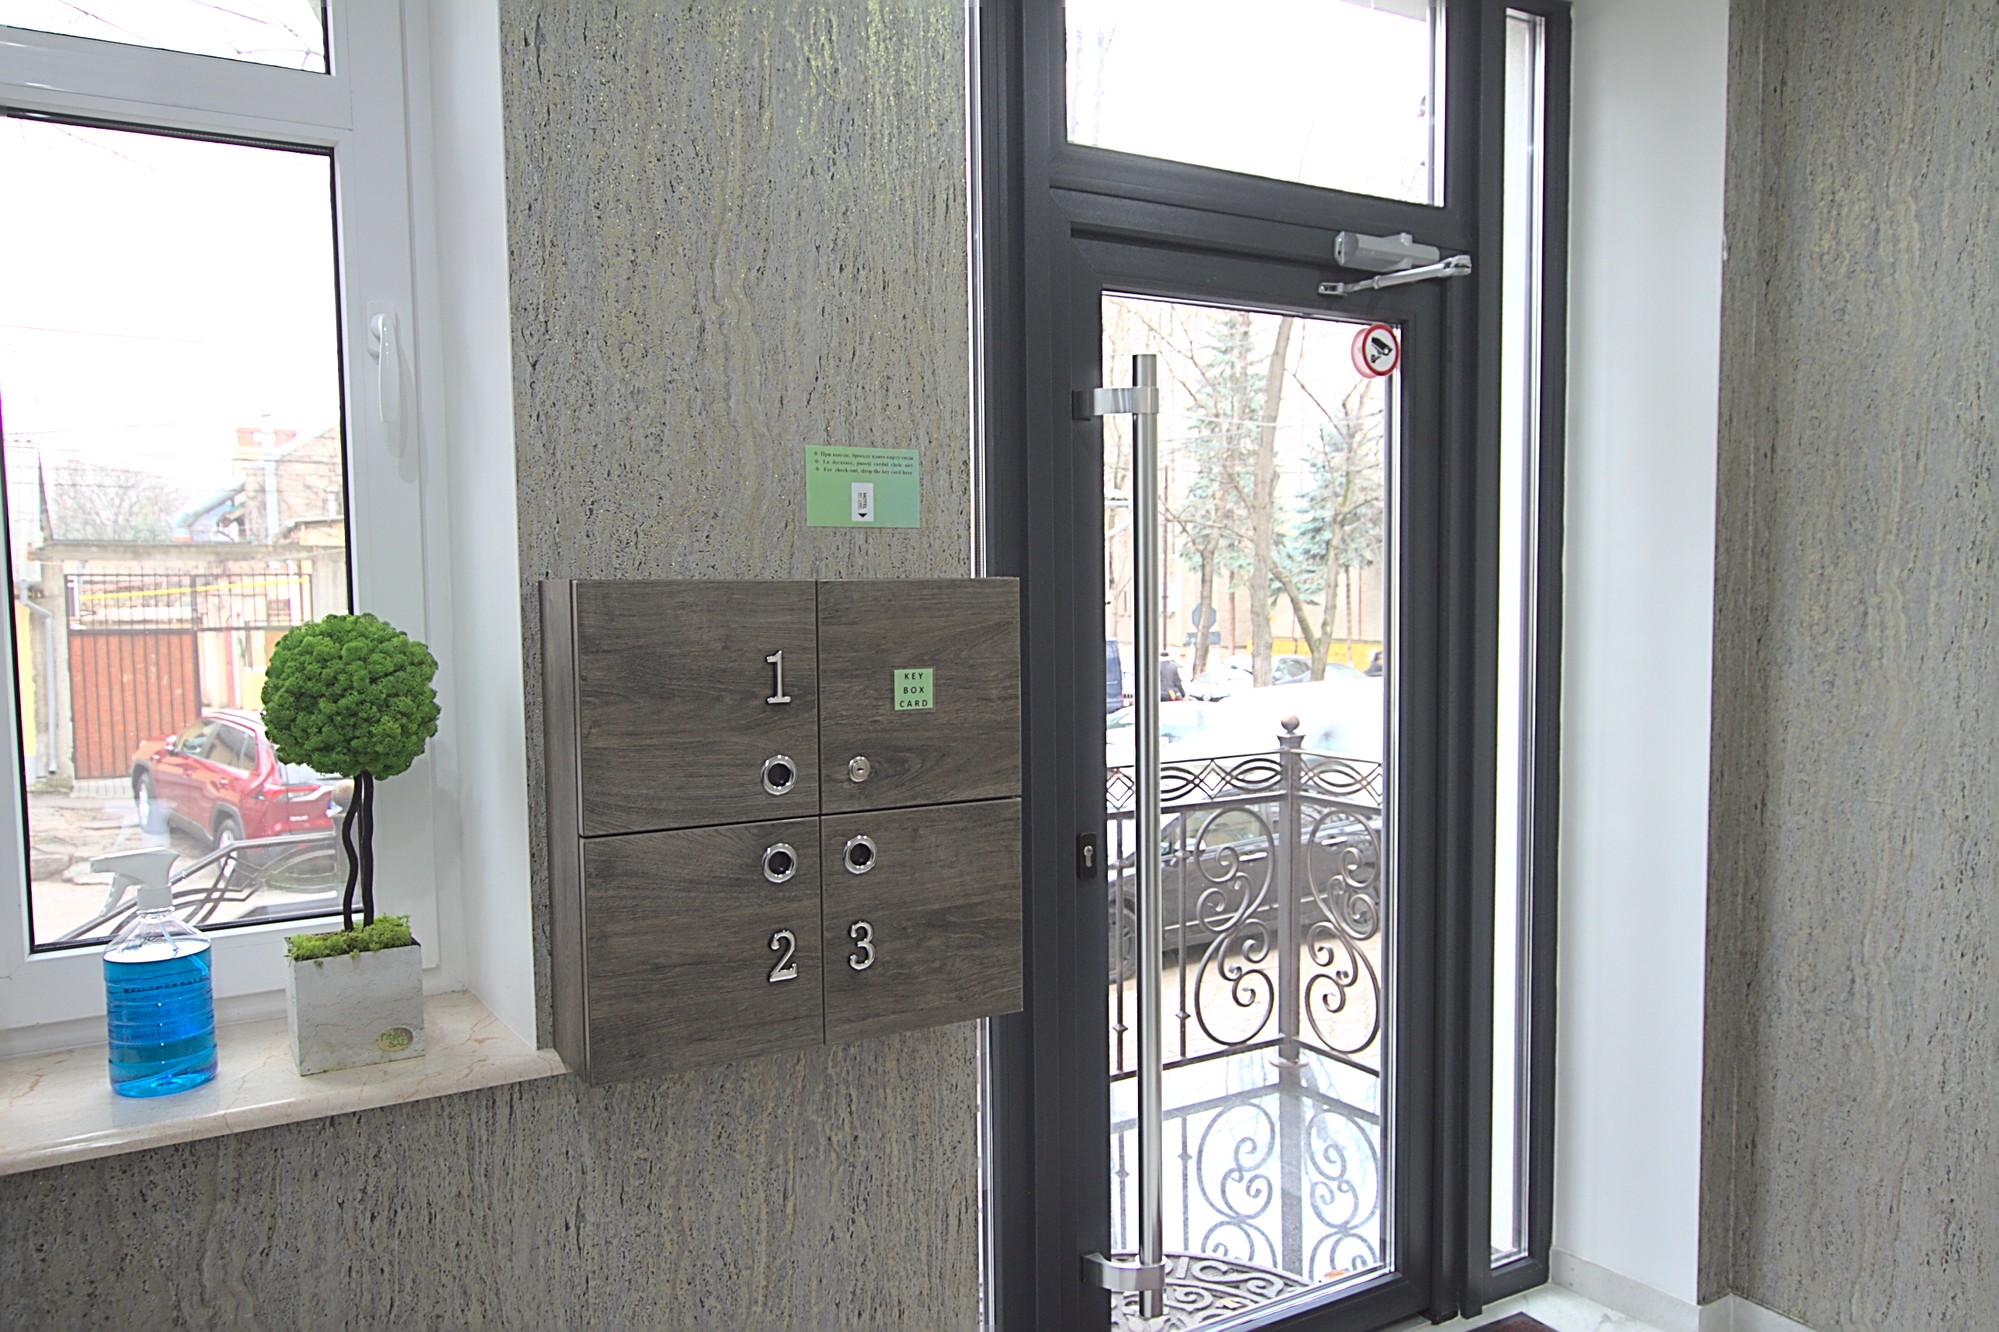 Self Check-in 1 это квартира в аренду в Кишиневе имеющая 2 комнаты в аренду в Кишиневе - Chisinau, Moldova